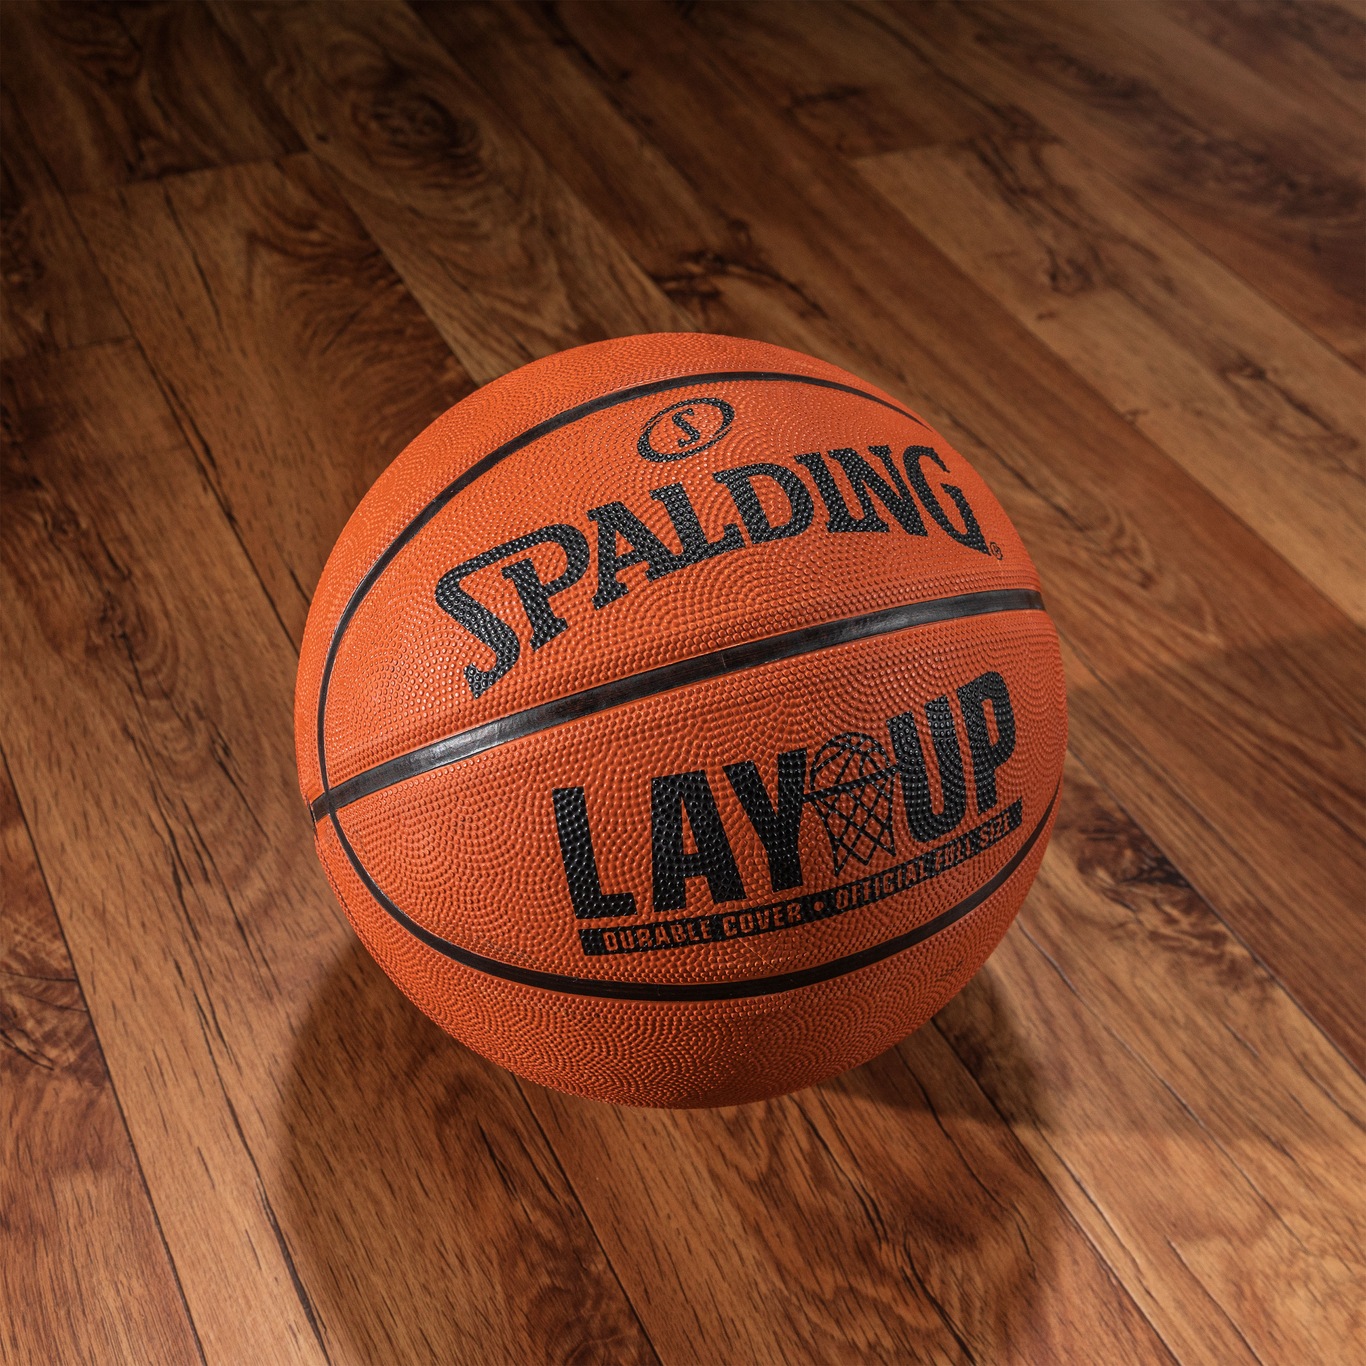 Bola De Basquete Spalding Lay-Up Tamanho 7 Com em Promoção na Americanas